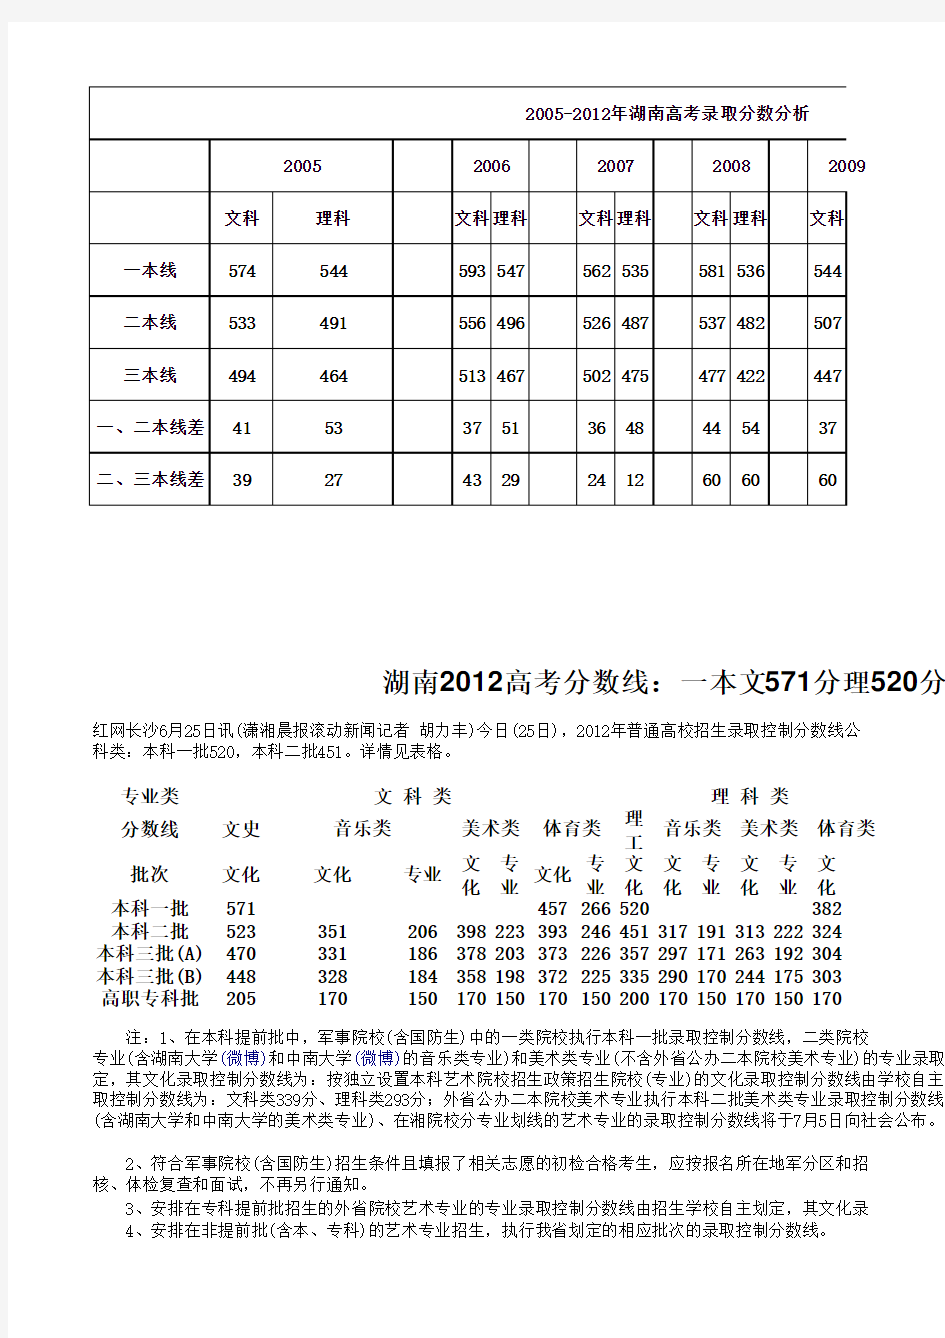 2012-2005湖南省高考录取分数线分析【经典】